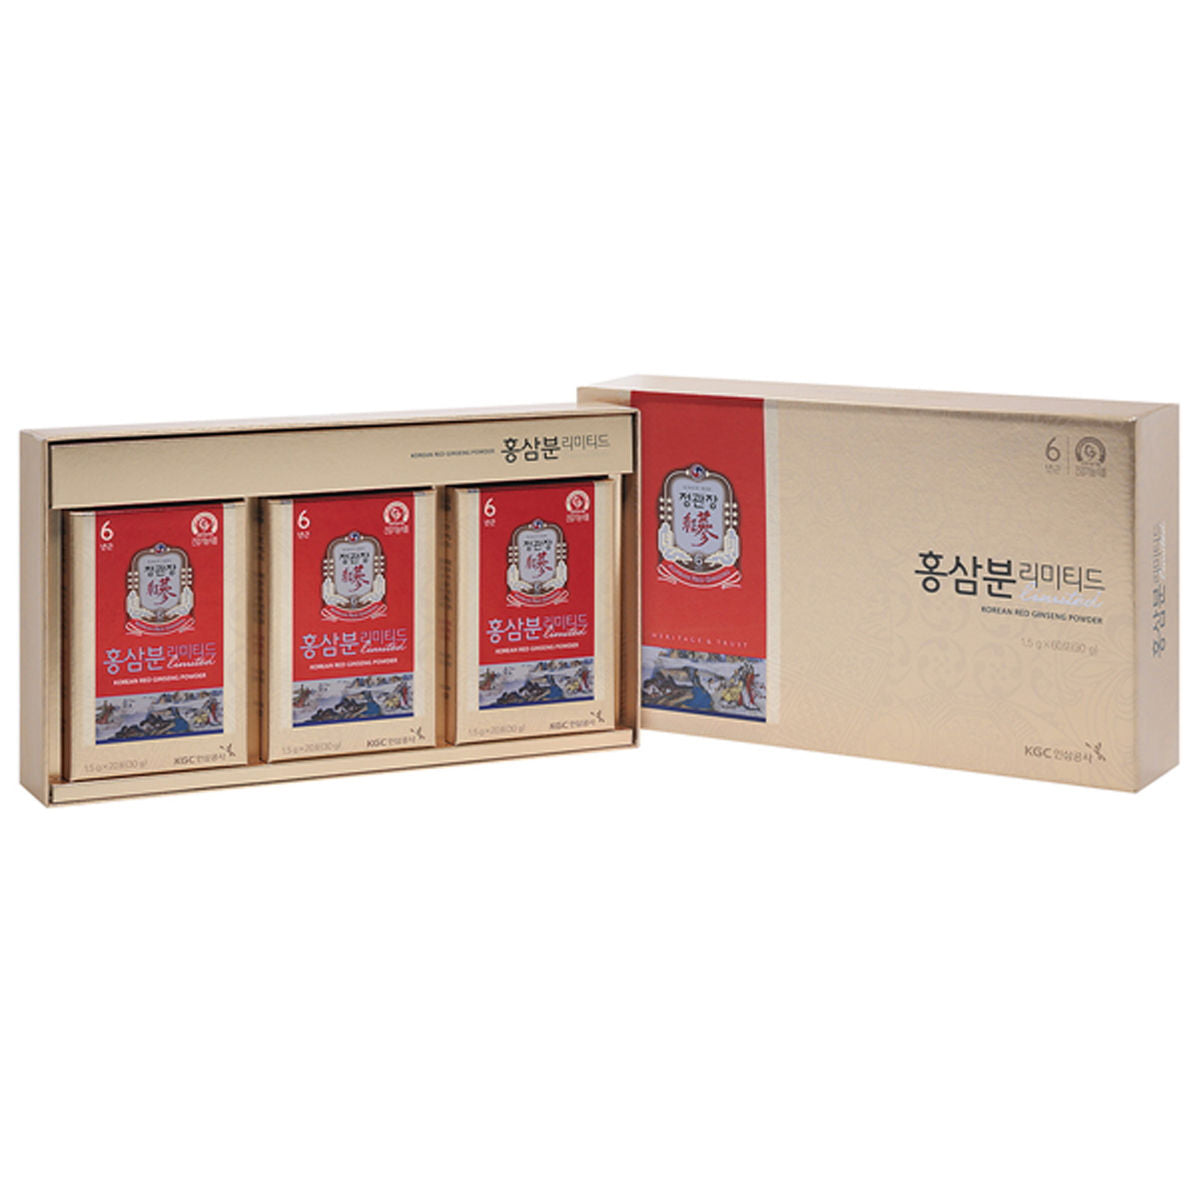 KGC Cheong Kwan Jang Red Ginseng Powder Limited Sets 1.5g x 60 Sticks